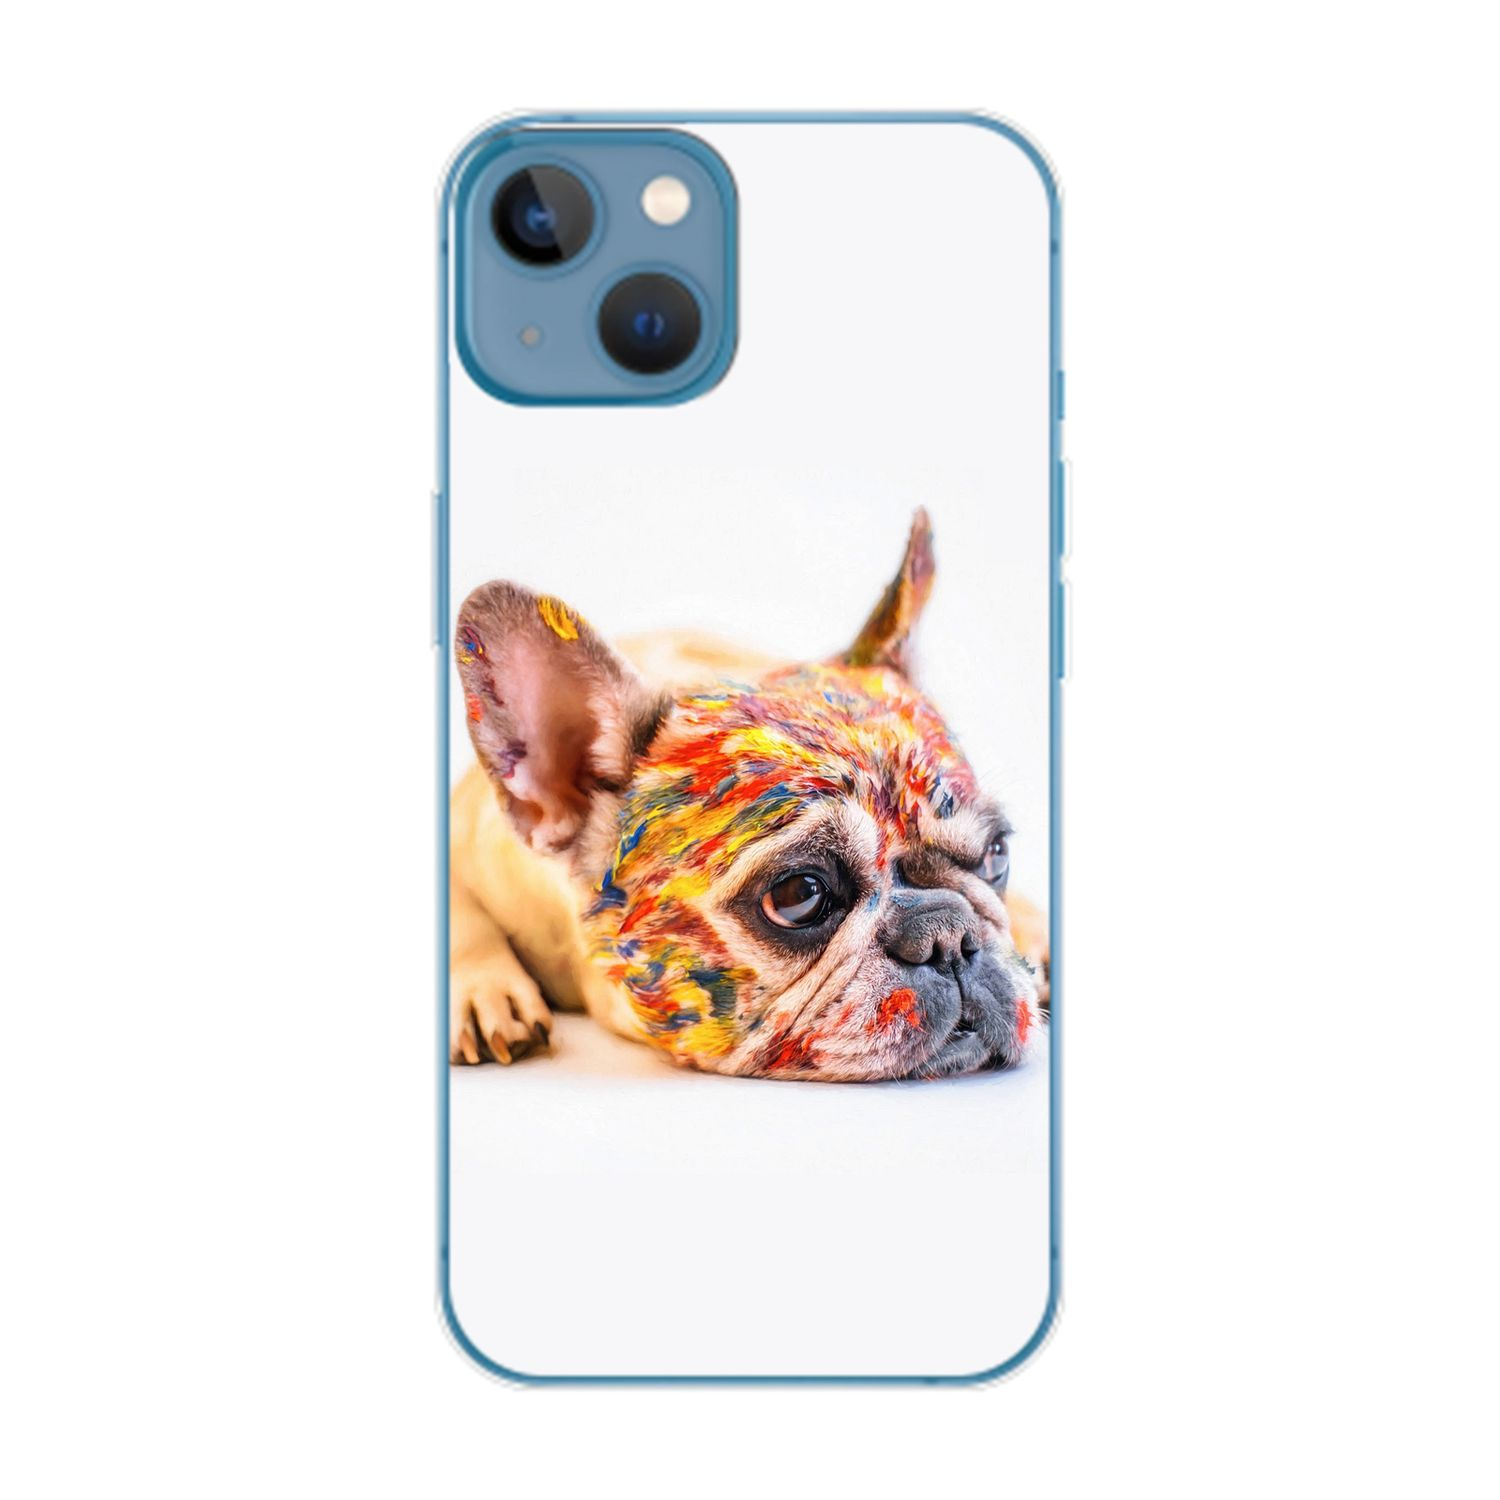 KÖNIG DESIGN Plus, 14 Bulldogge iPhone Apple, Backcover, Case, Bunt